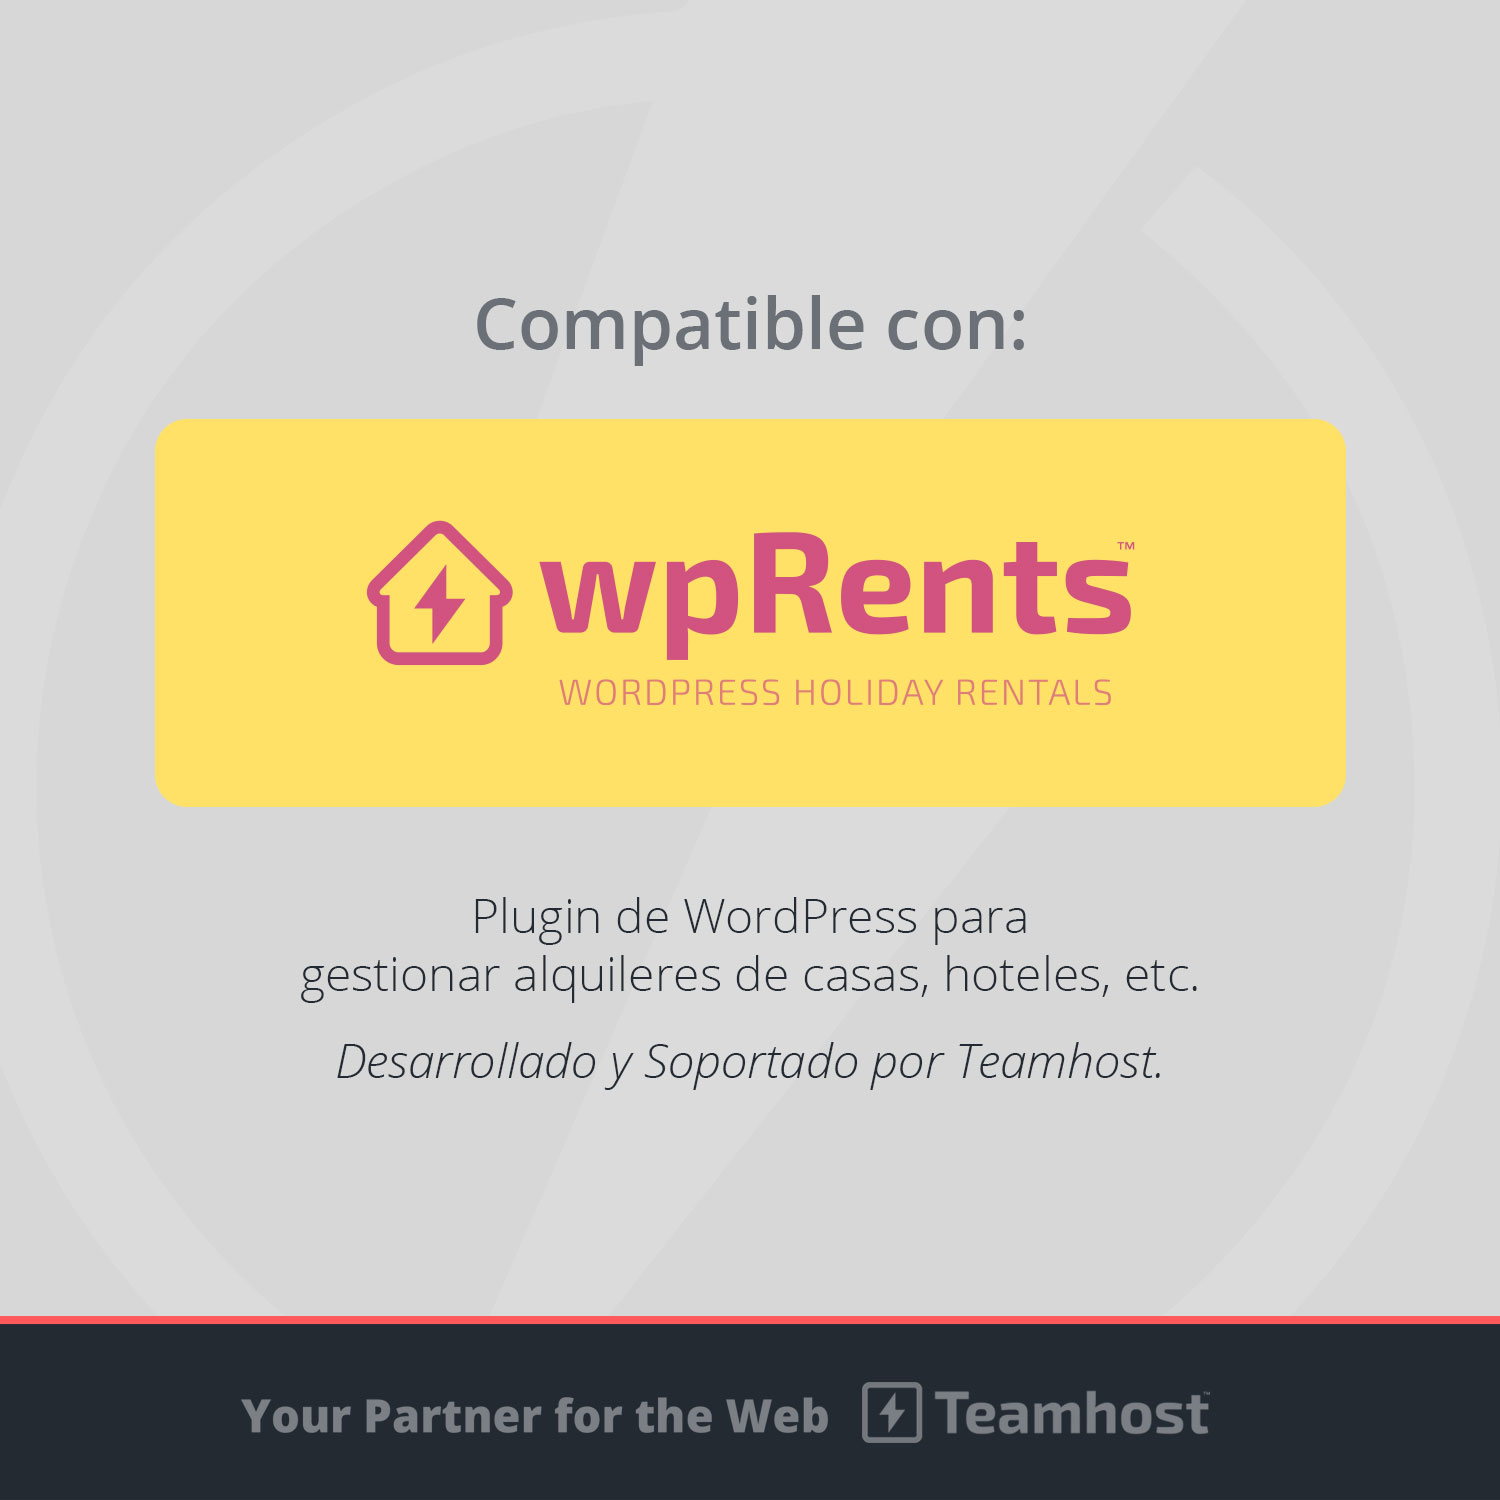 Plantilla WordPress compatible con Plugin wpRents